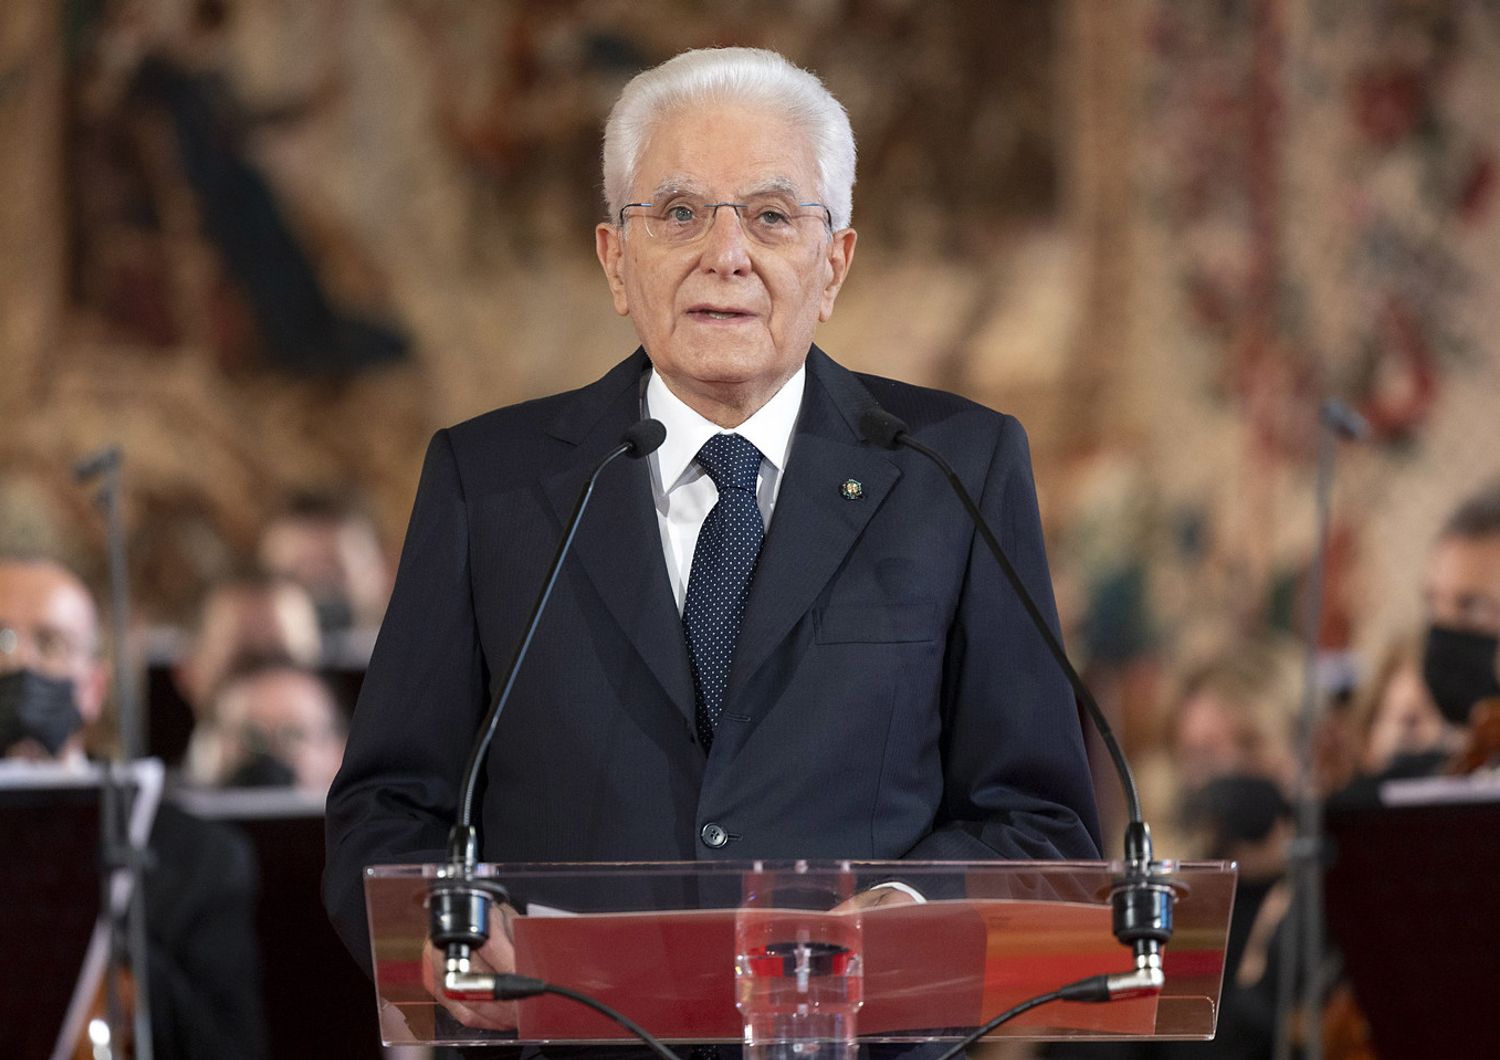 Sergio Mattarella, presidente della Repubblica